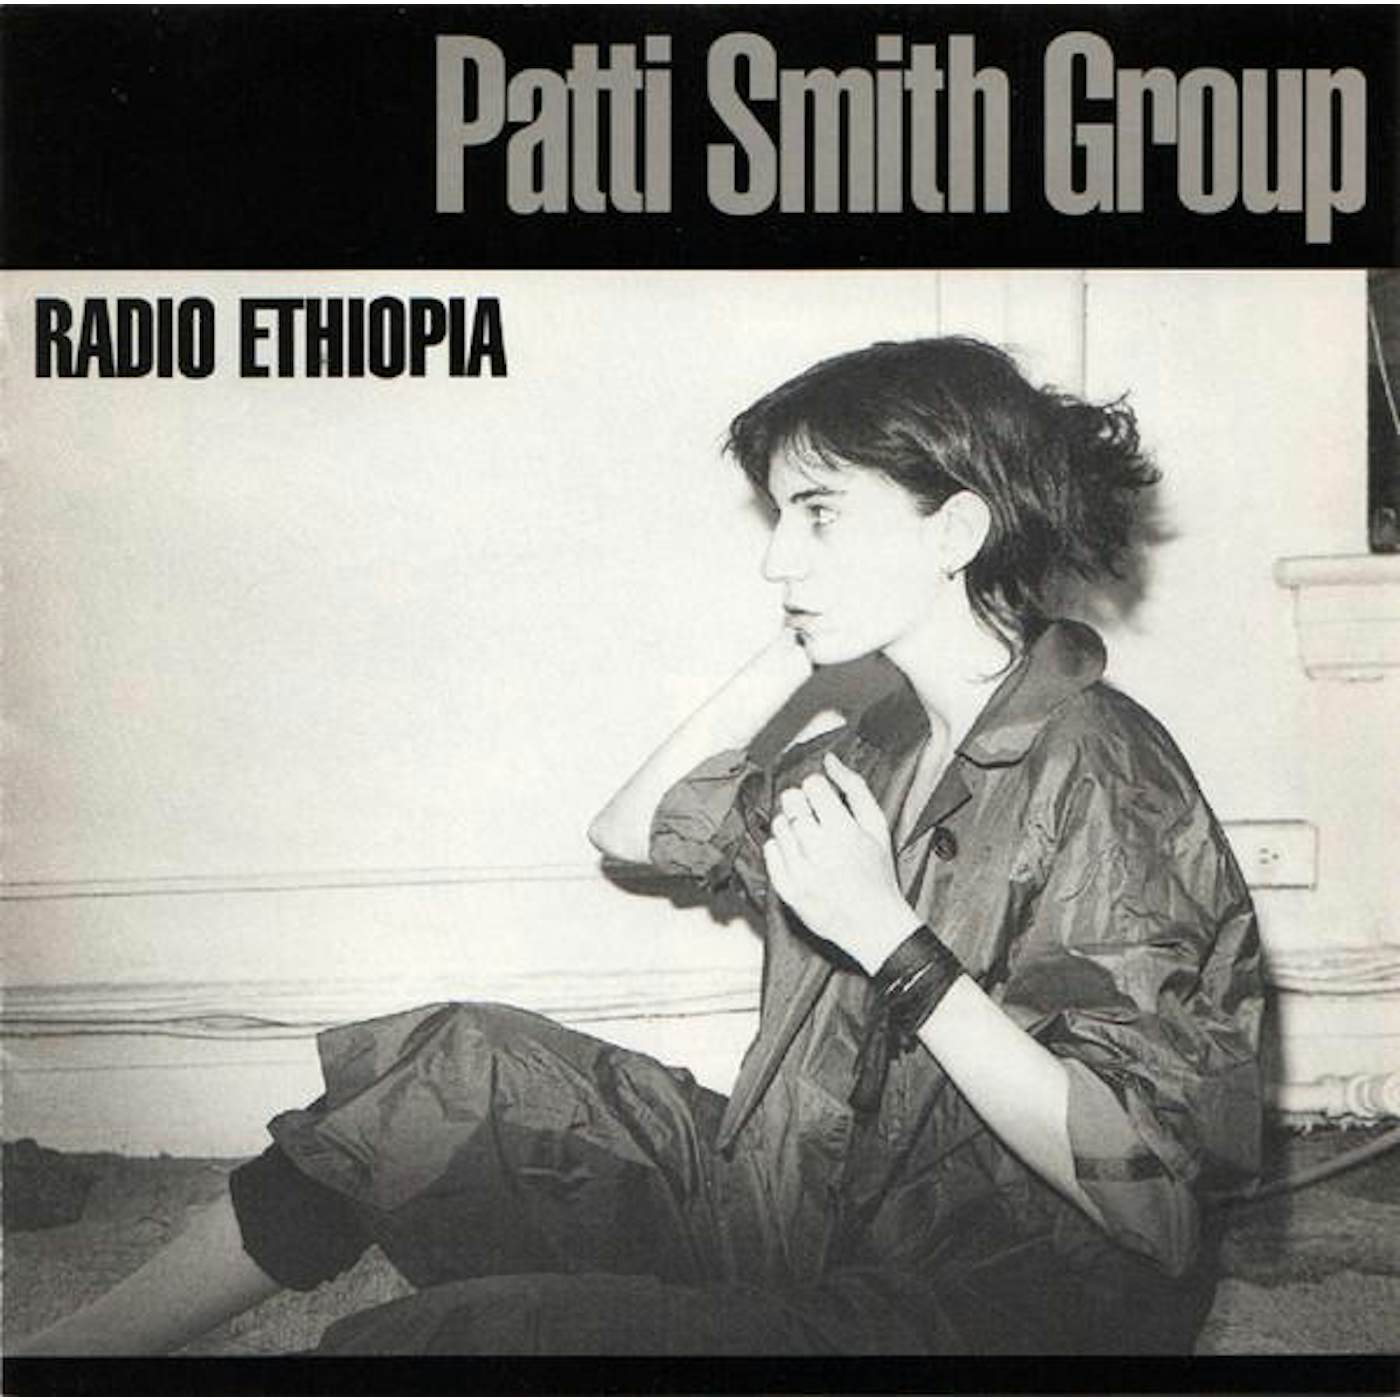 Patti Smith RADIO ETHIOPIA CD